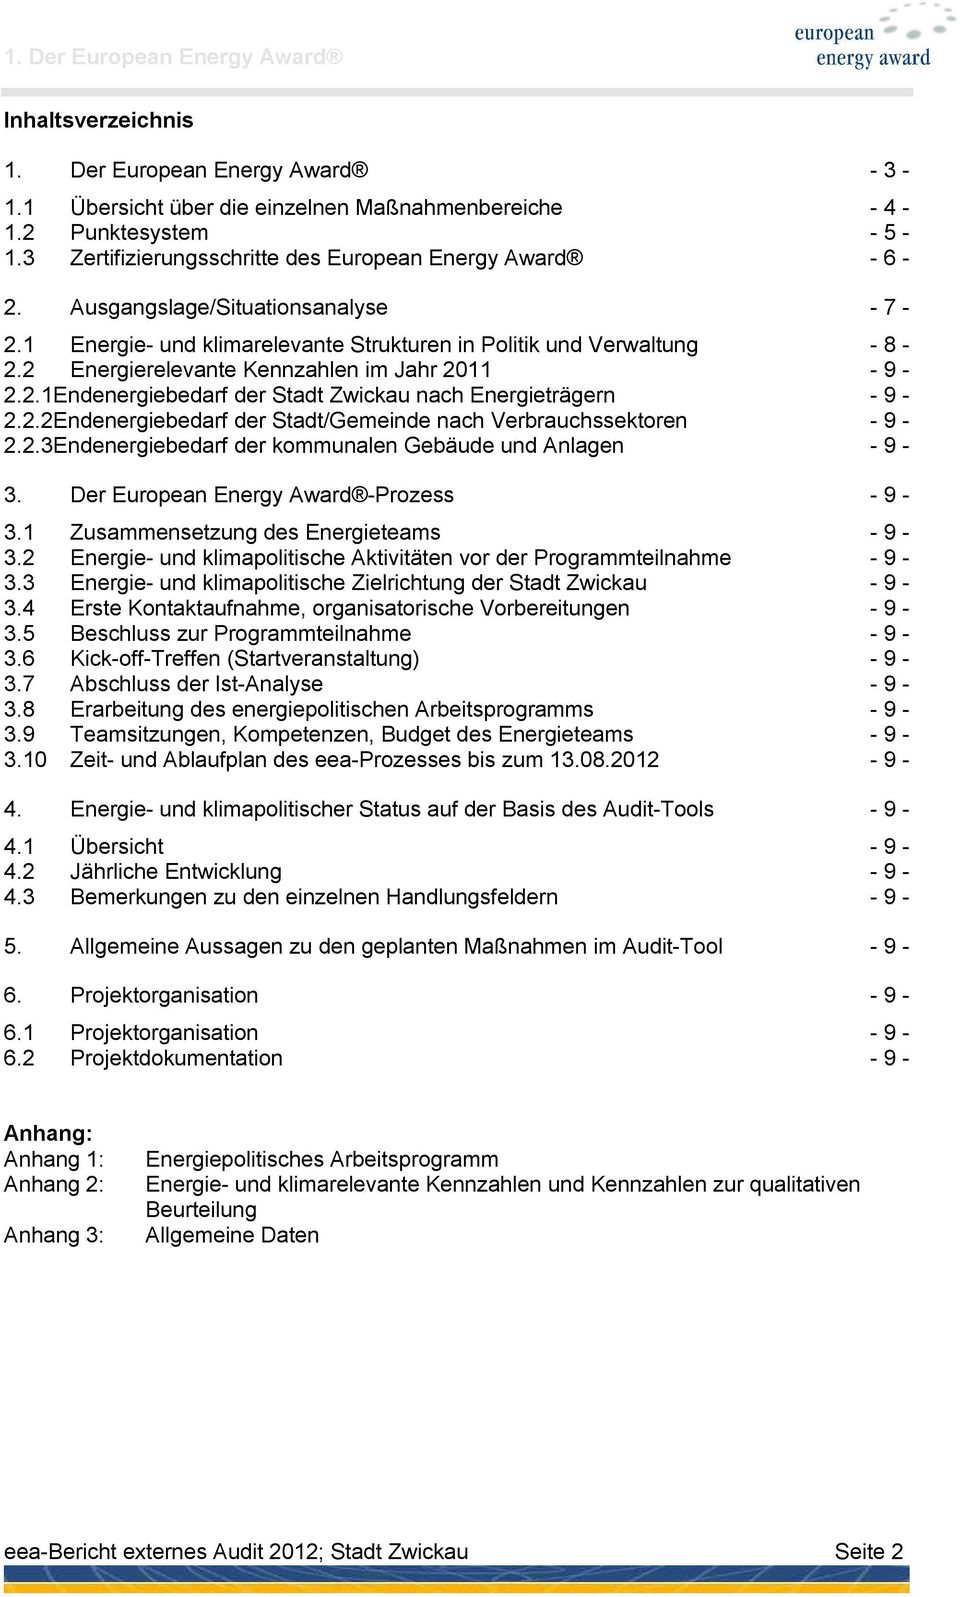 2 Energierelevante Kennzahlen im Jahr 2011-9 - 2.2.1Endenergiebedarf der Stadt Zwickau nach Energieträgern - 9-2.2.2Endenergiebedarf der Stadt/Gemeinde nach Verbrauchssektoren - 9-2.2.3Endenergiebedarf der kommunalen Gebäude und Anlagen - 9-3.